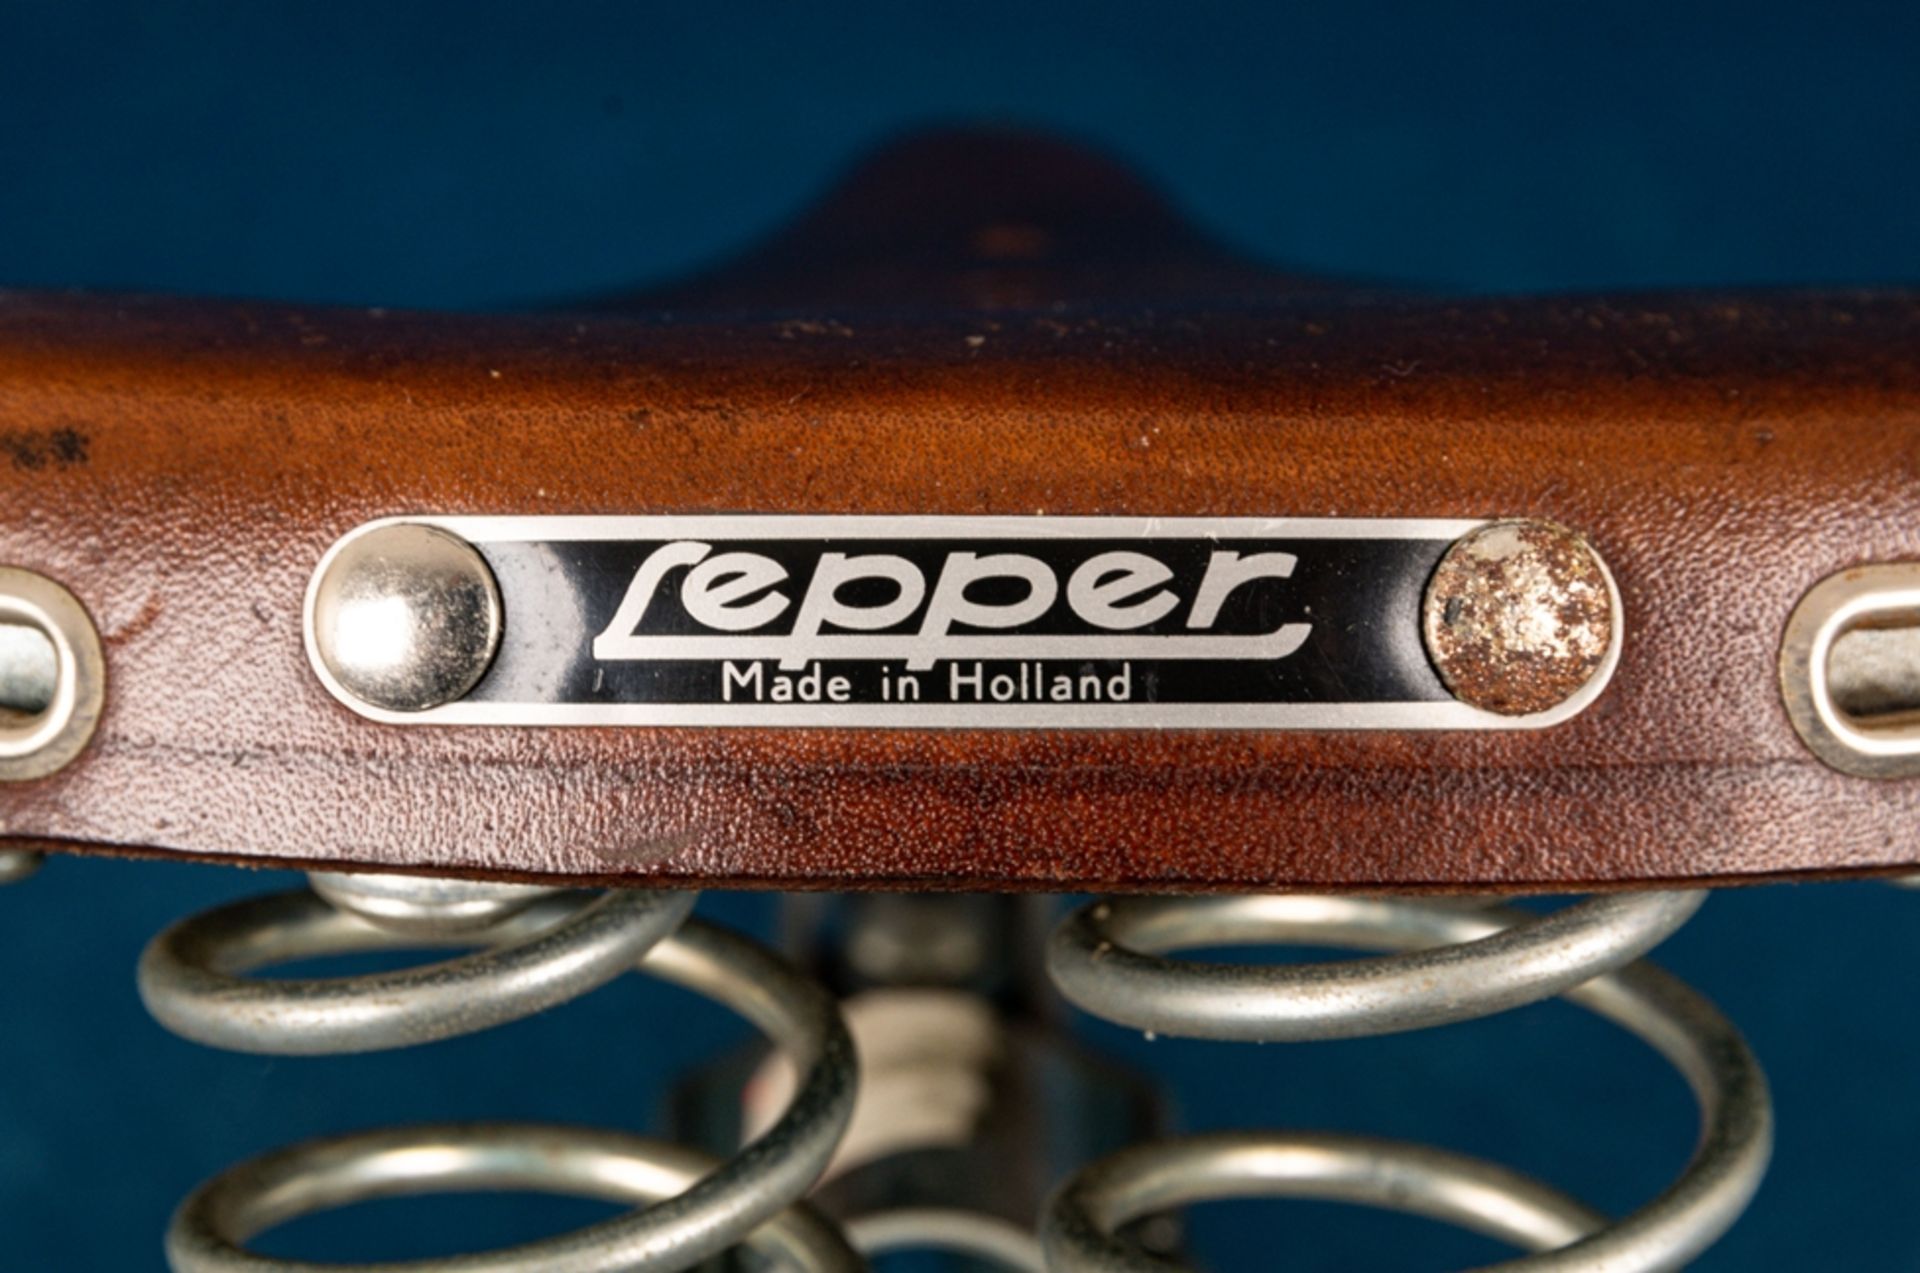 "Lepper" - Fahrradsattel, braunes Sattelleder, guter Erhalt, Länge ca. 25 cm. - Bild 7 aus 12